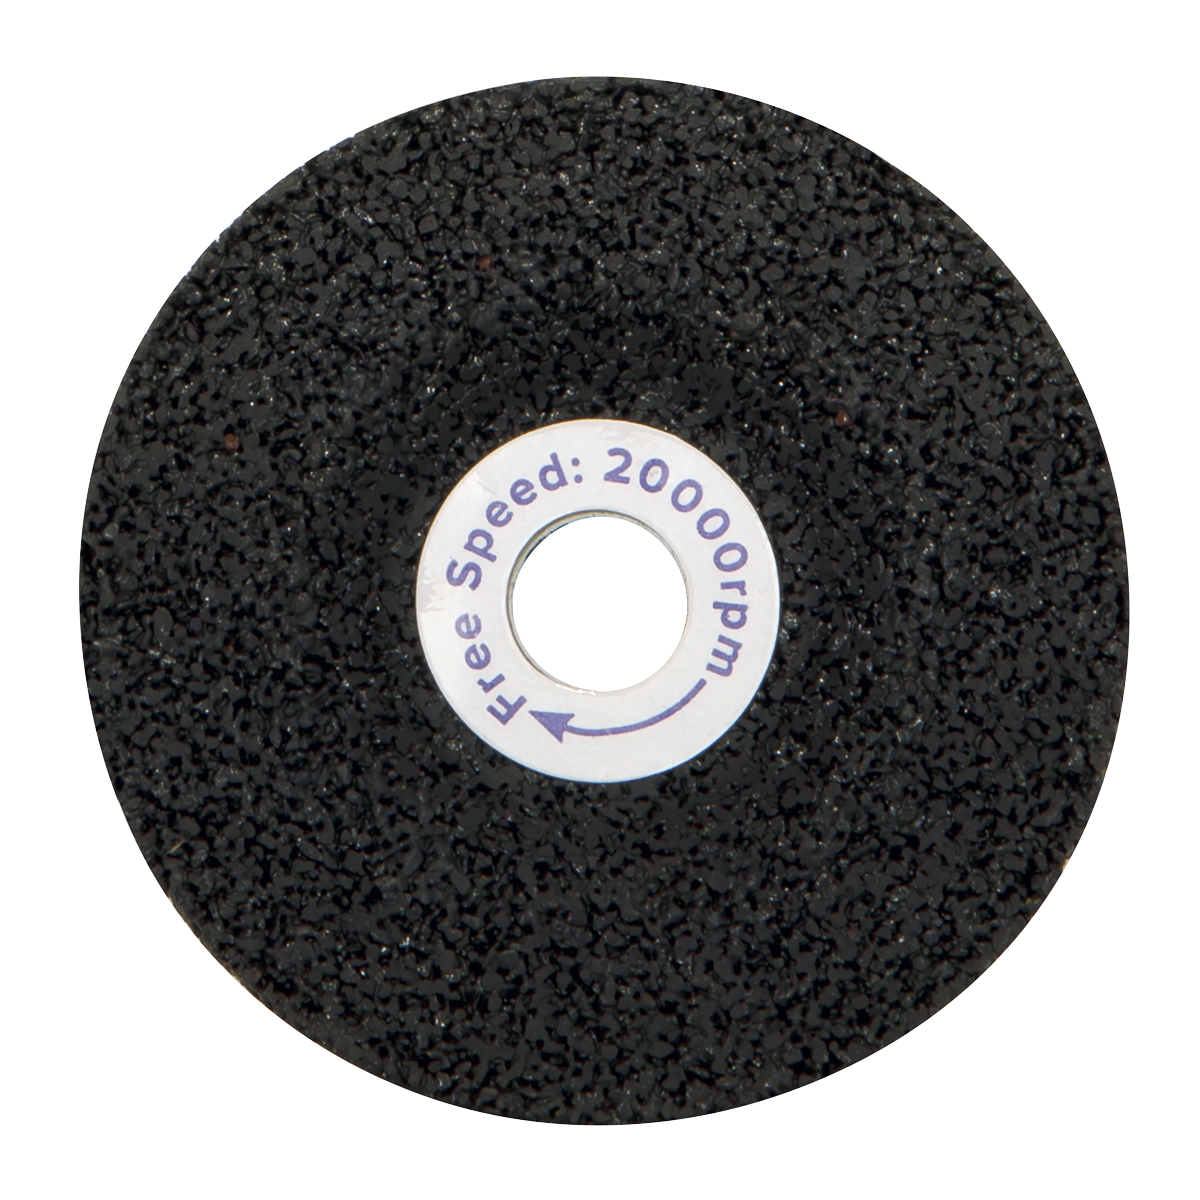 Grinding Disc Ø58 x 4mm Ø9.5mm Bore - PTC/50G - Farming Parts